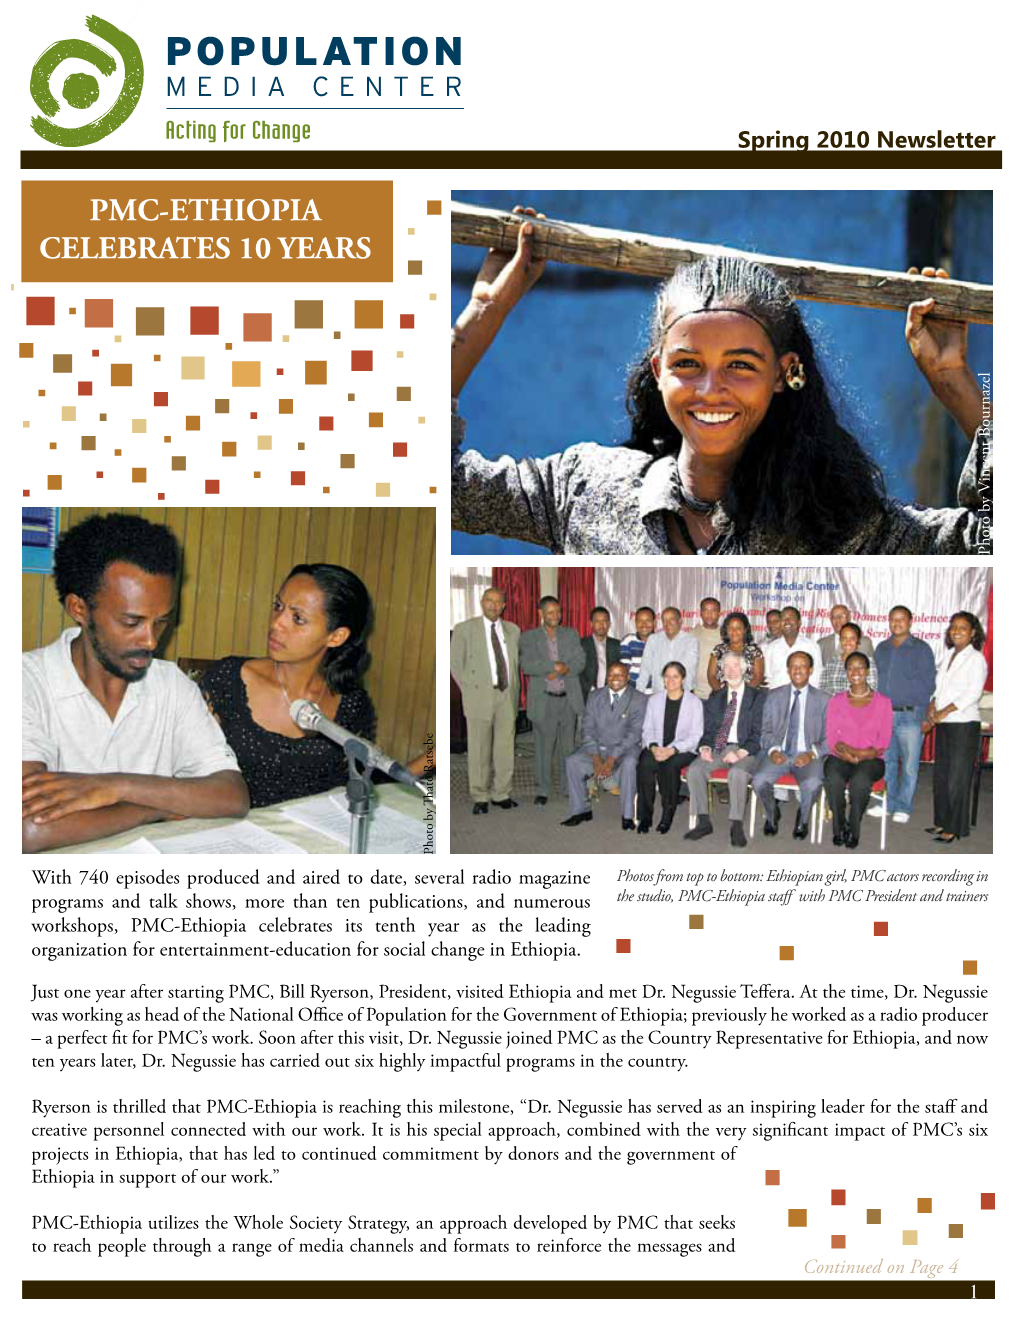 Pmc-Ethiopia Celebrates 10 Years